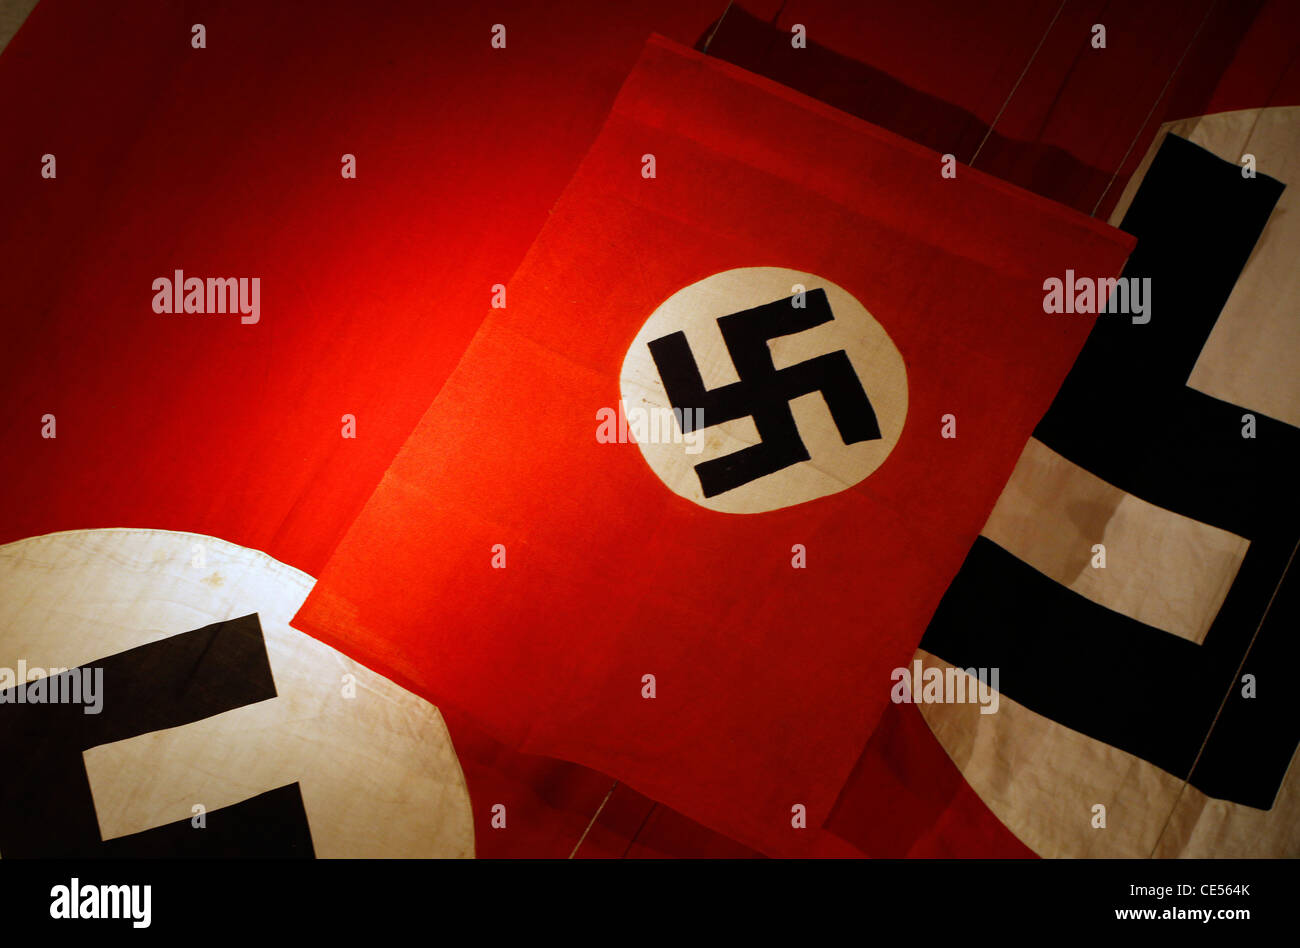 nazi flag wallpaper